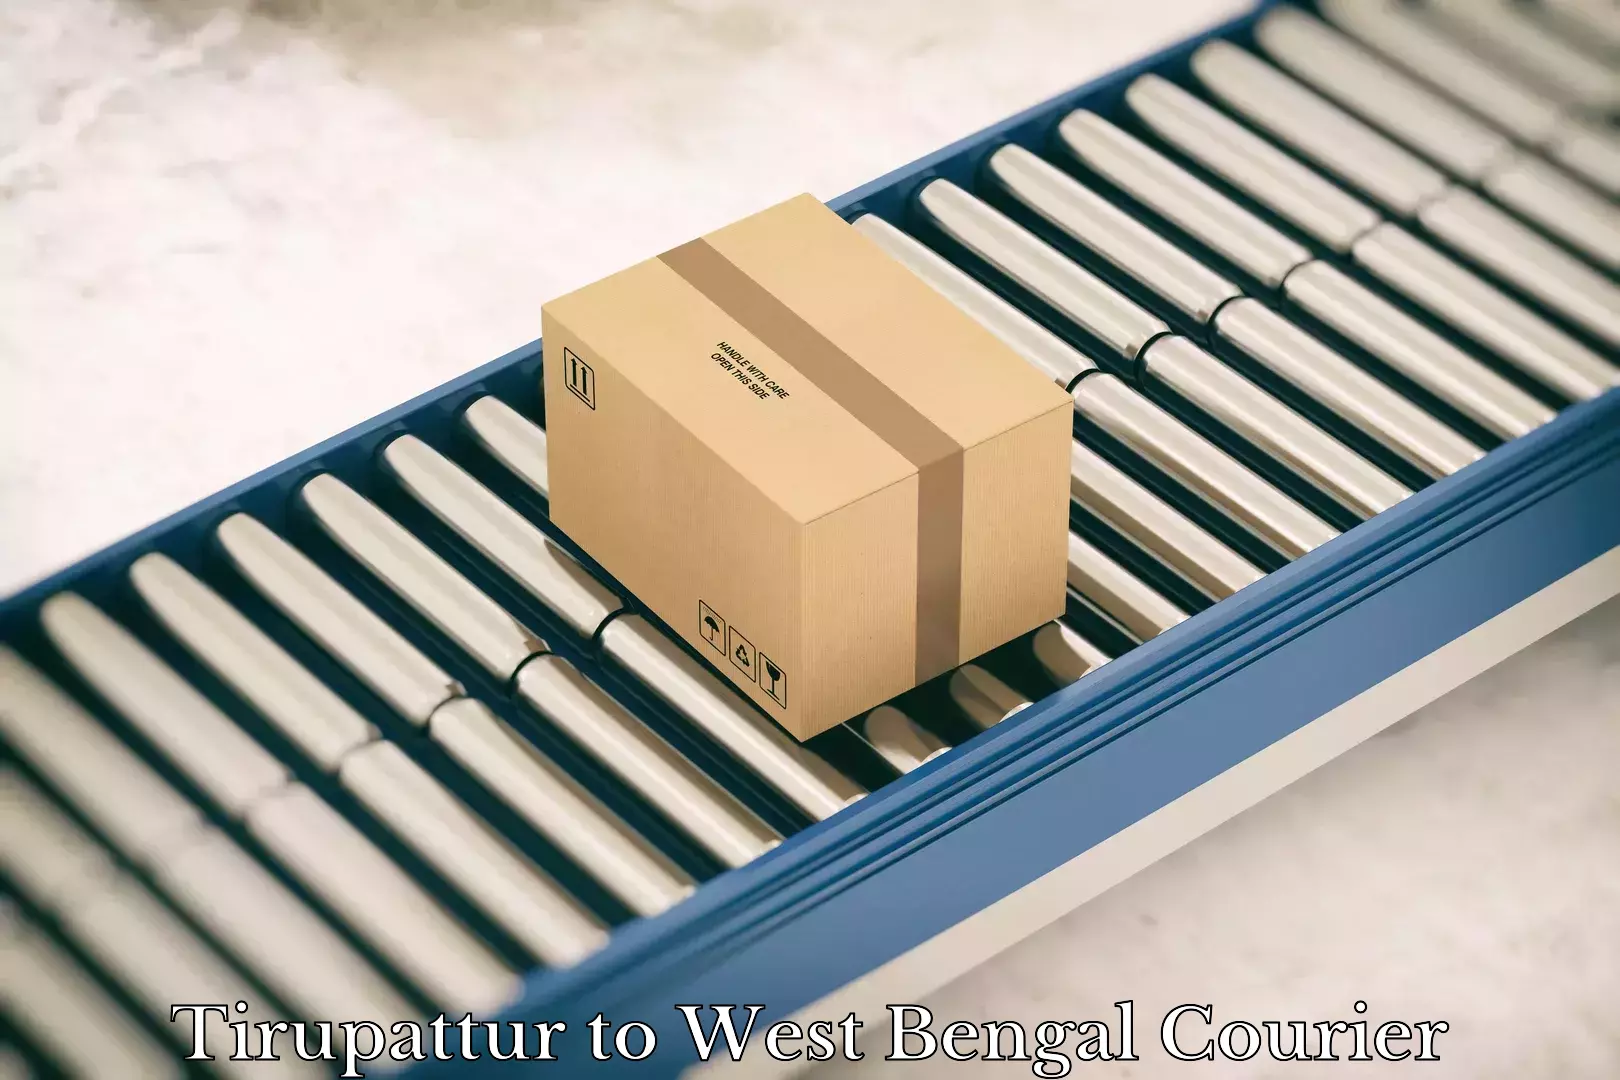 Reliable parcel services Tirupattur to West Bengal